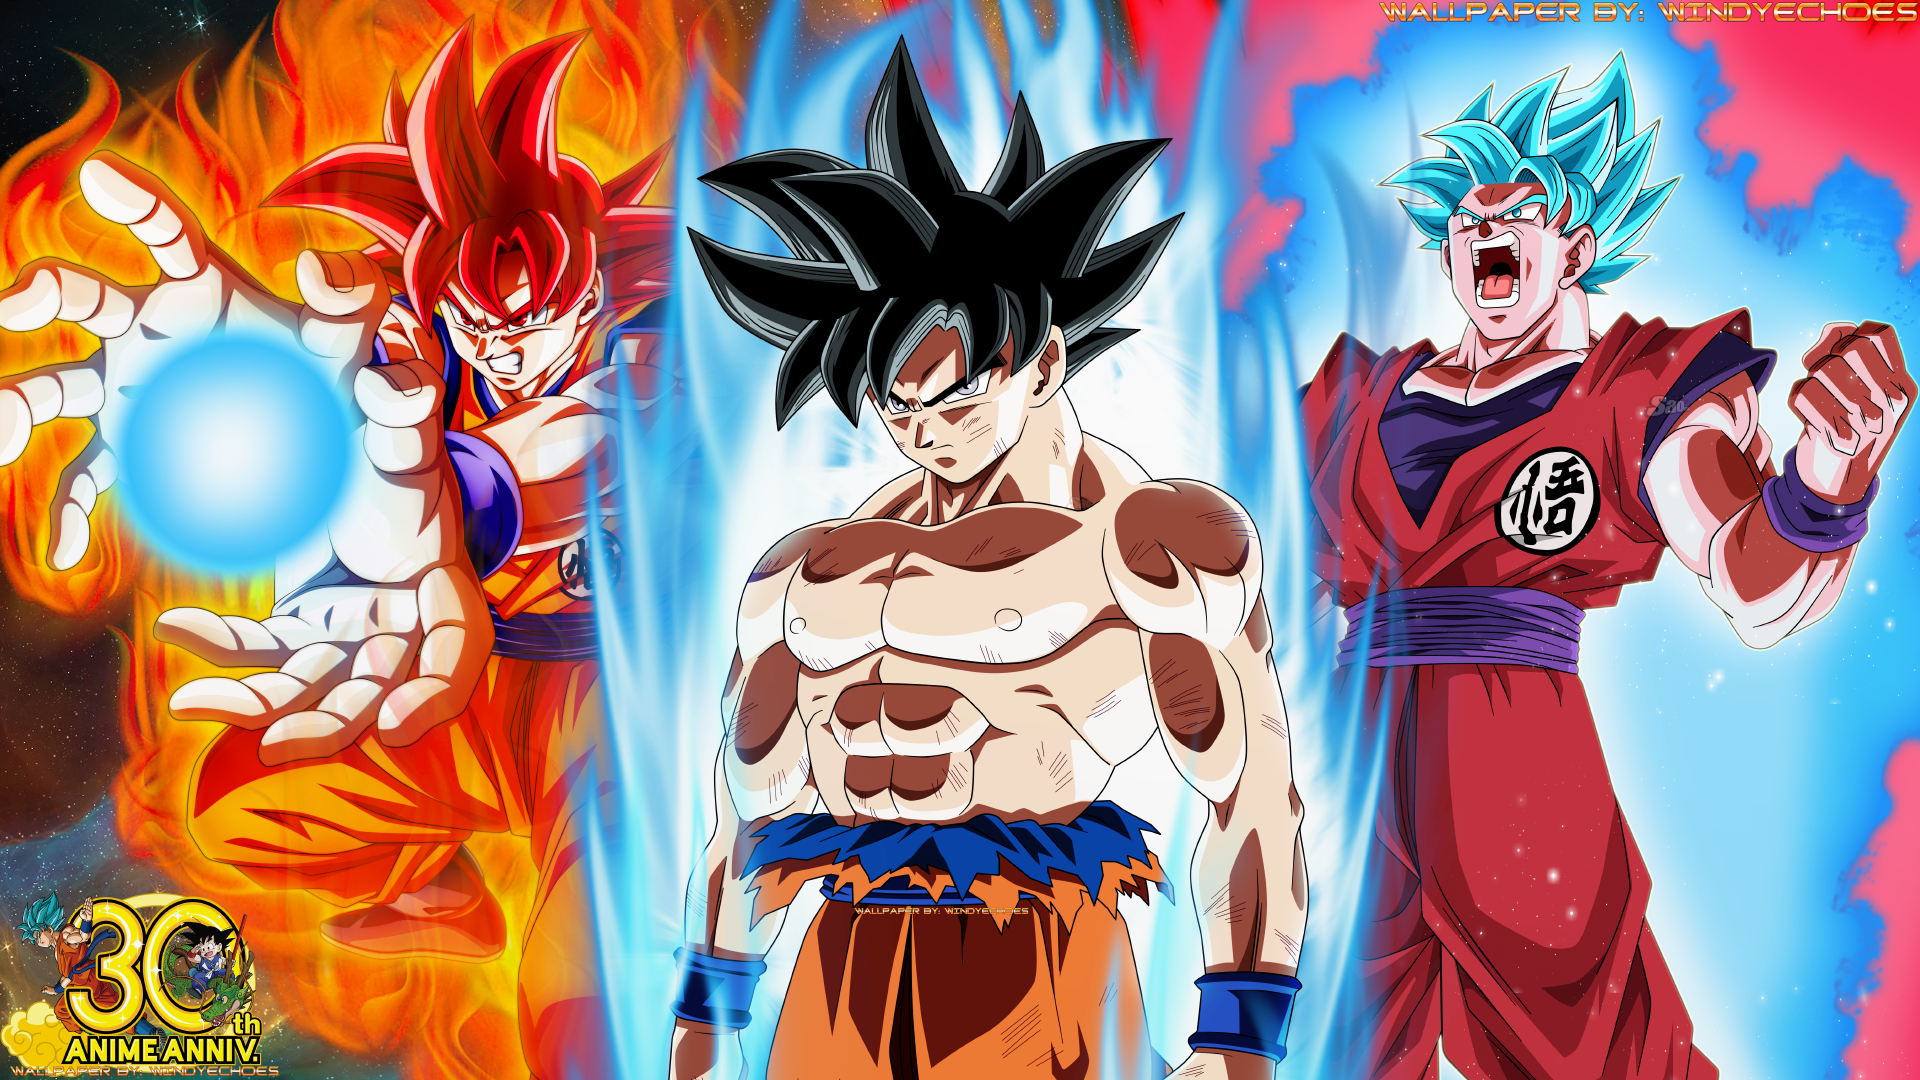 Goku Super Saiyan God - All Three Transformations by WindyEchoes on